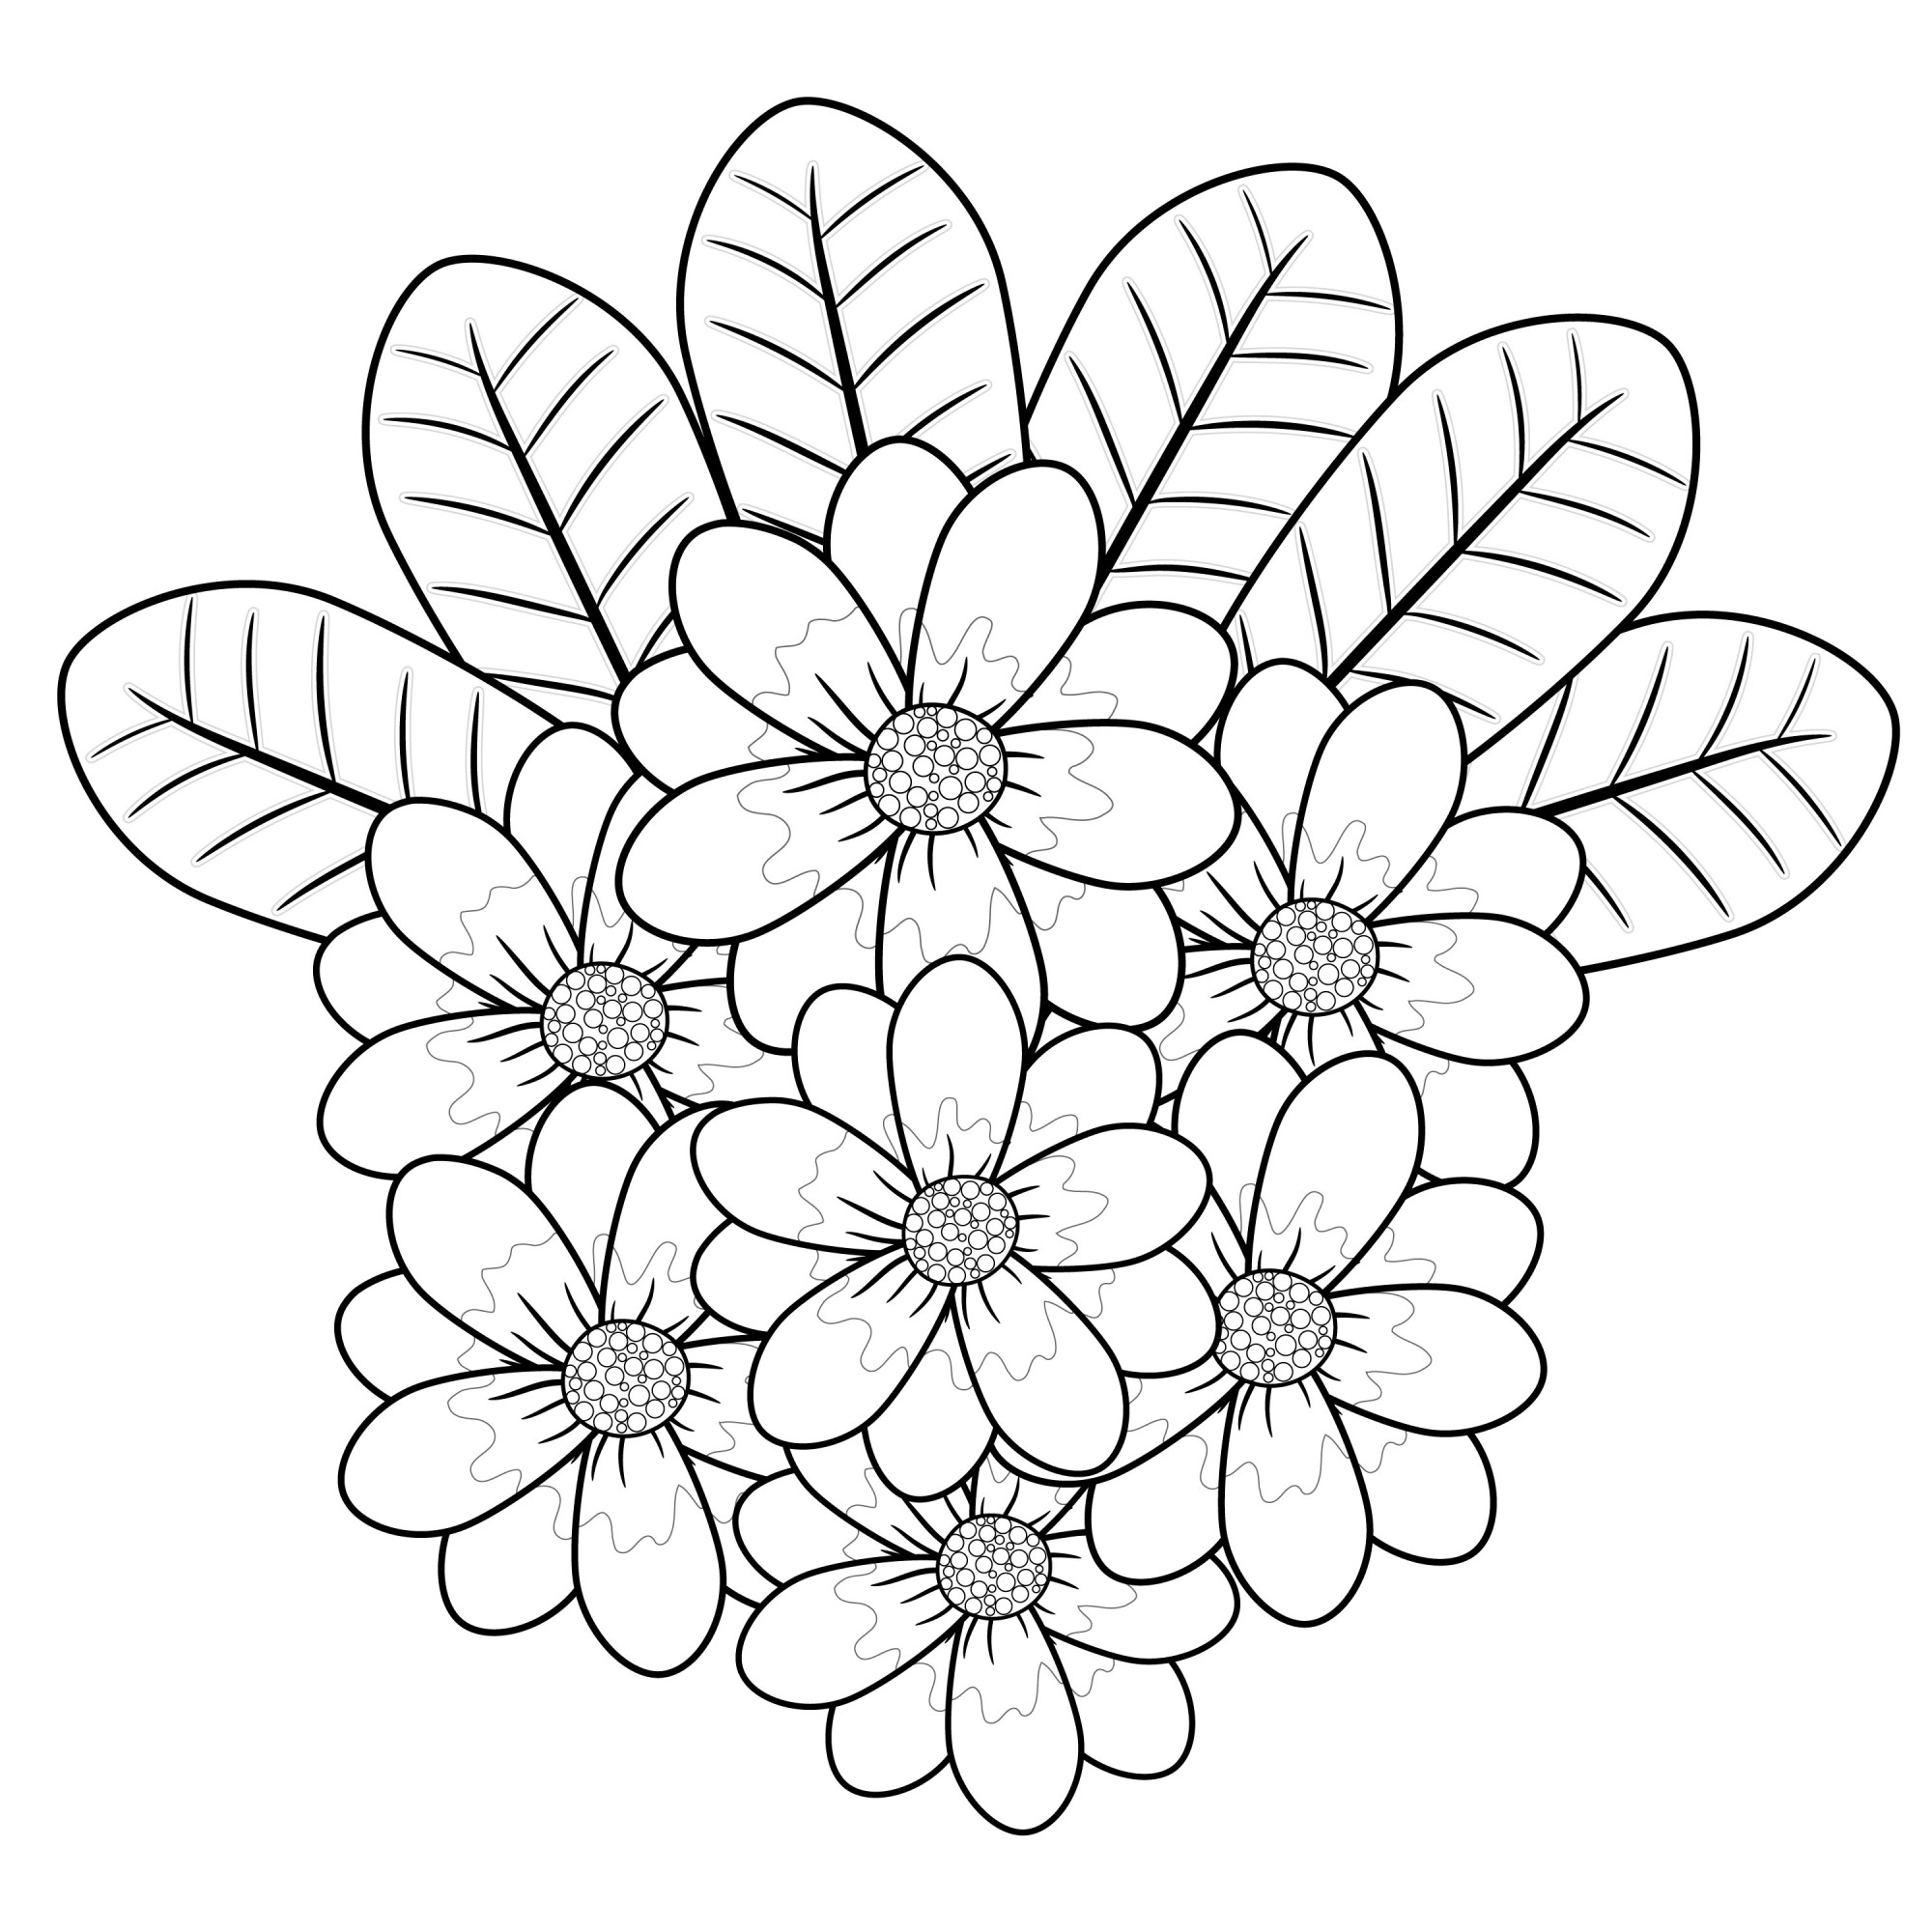 Раскраска для детей: цветки плюмерия с листиками